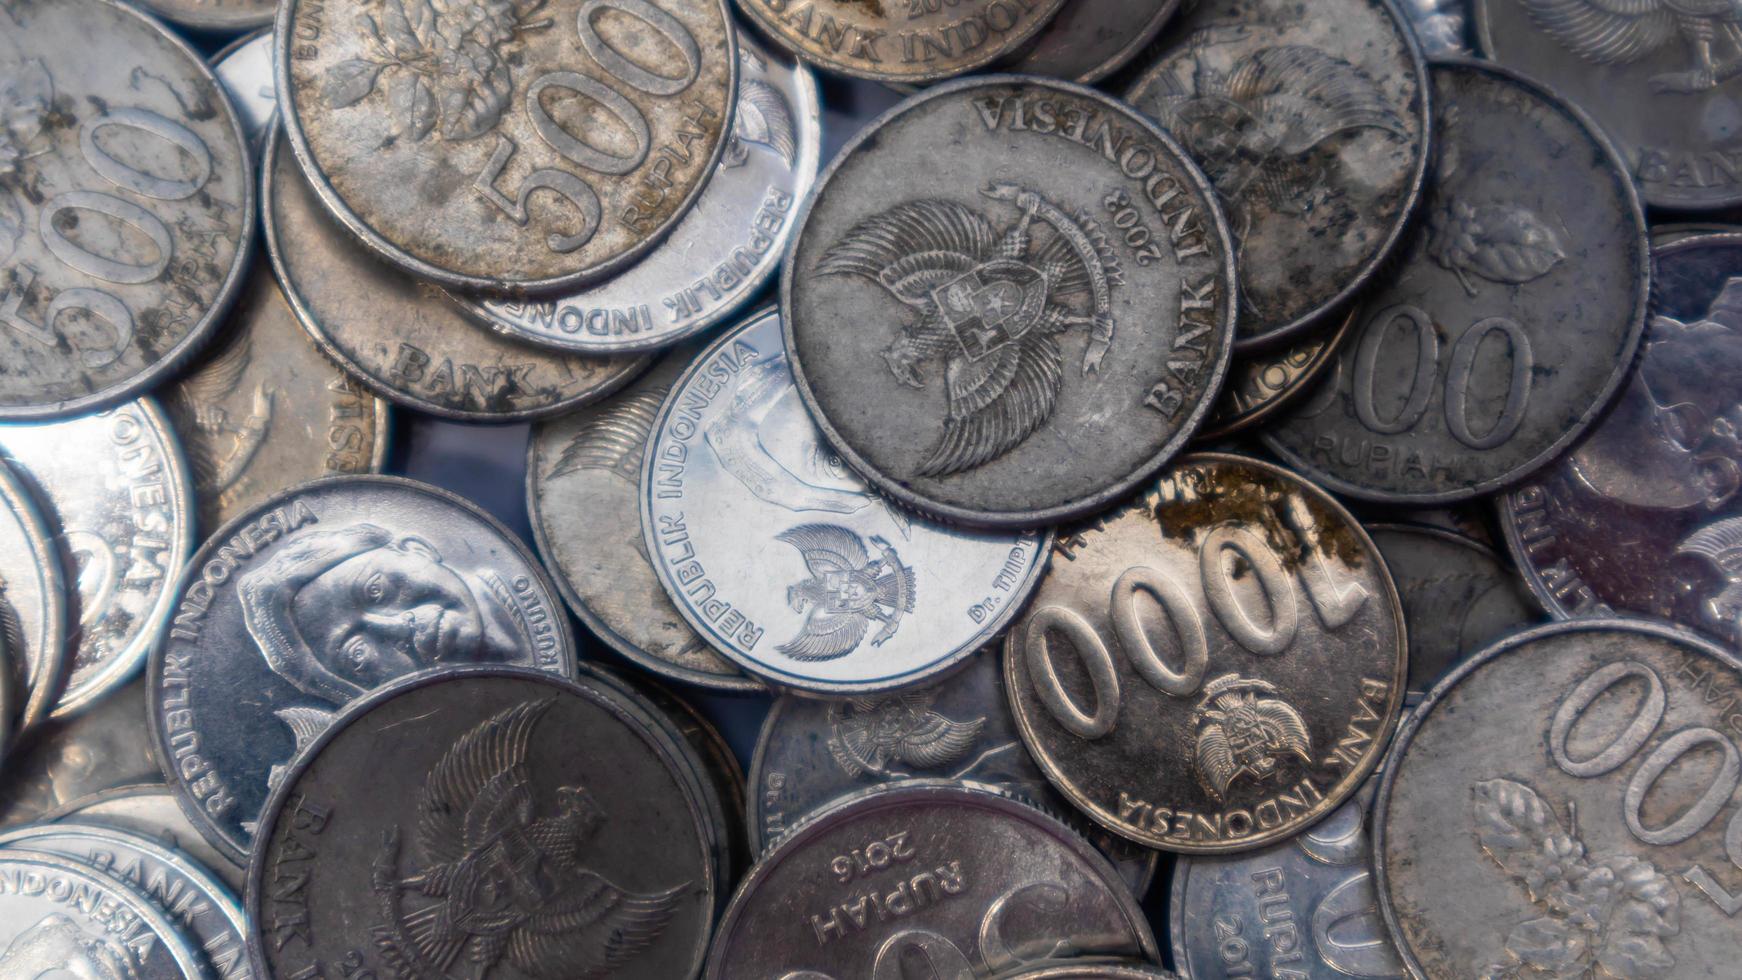 pila de monedas de rupias como fondo foto